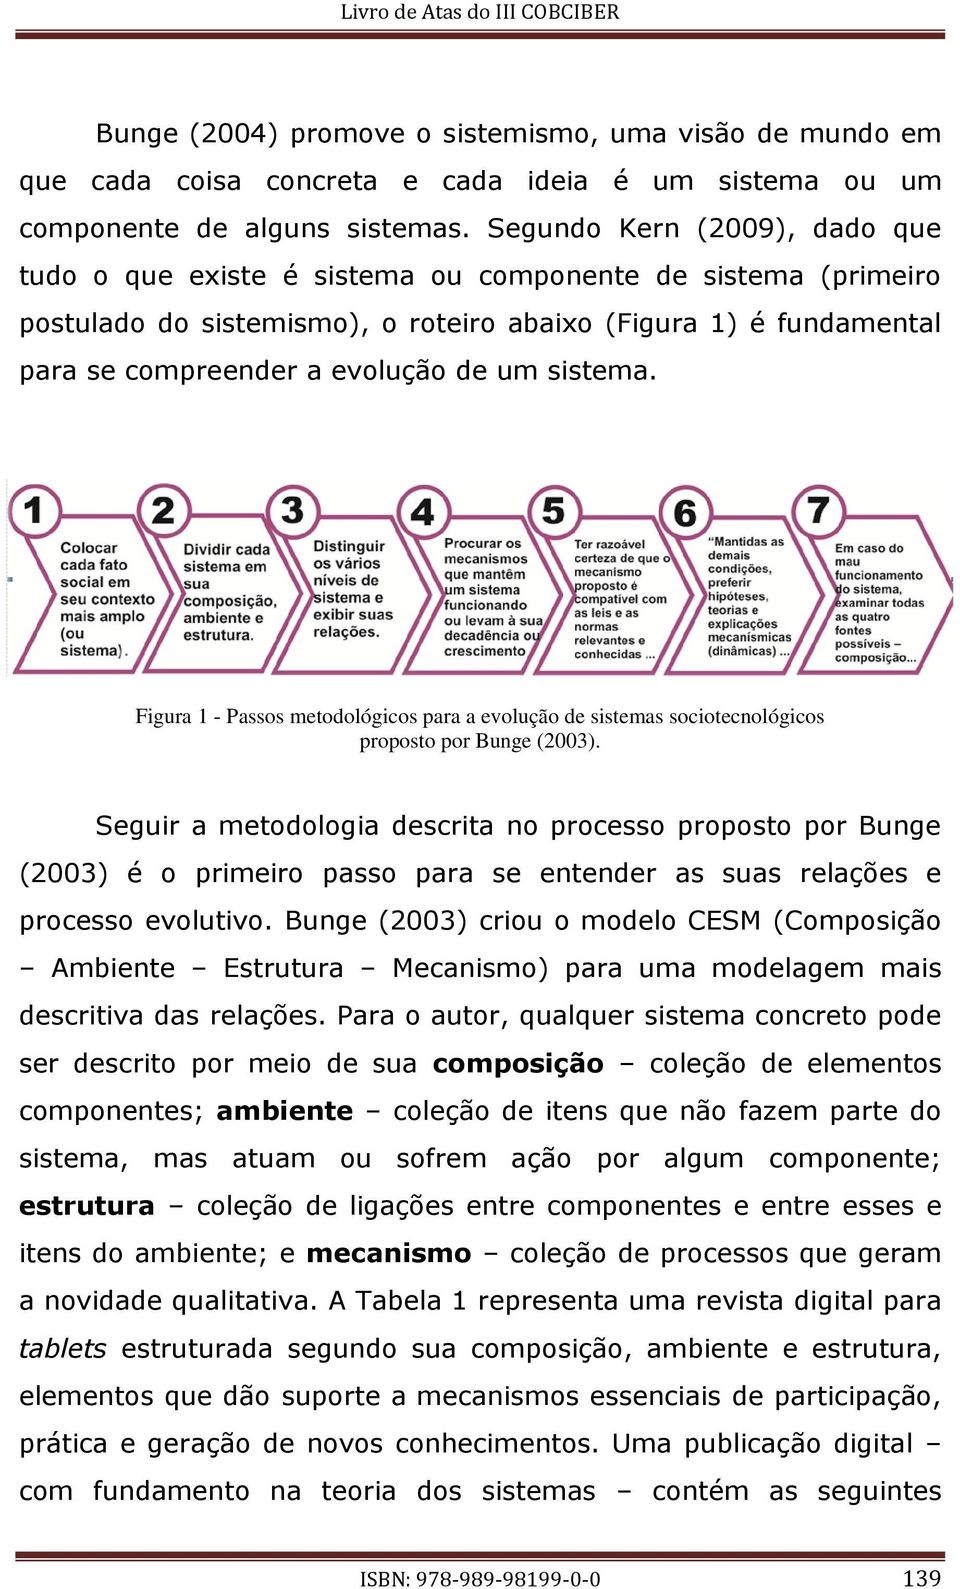 sistema. Figura 1 - Passos metodológicos para a evolução de sistemas sociotecnológicos proposto por Bunge (2003).